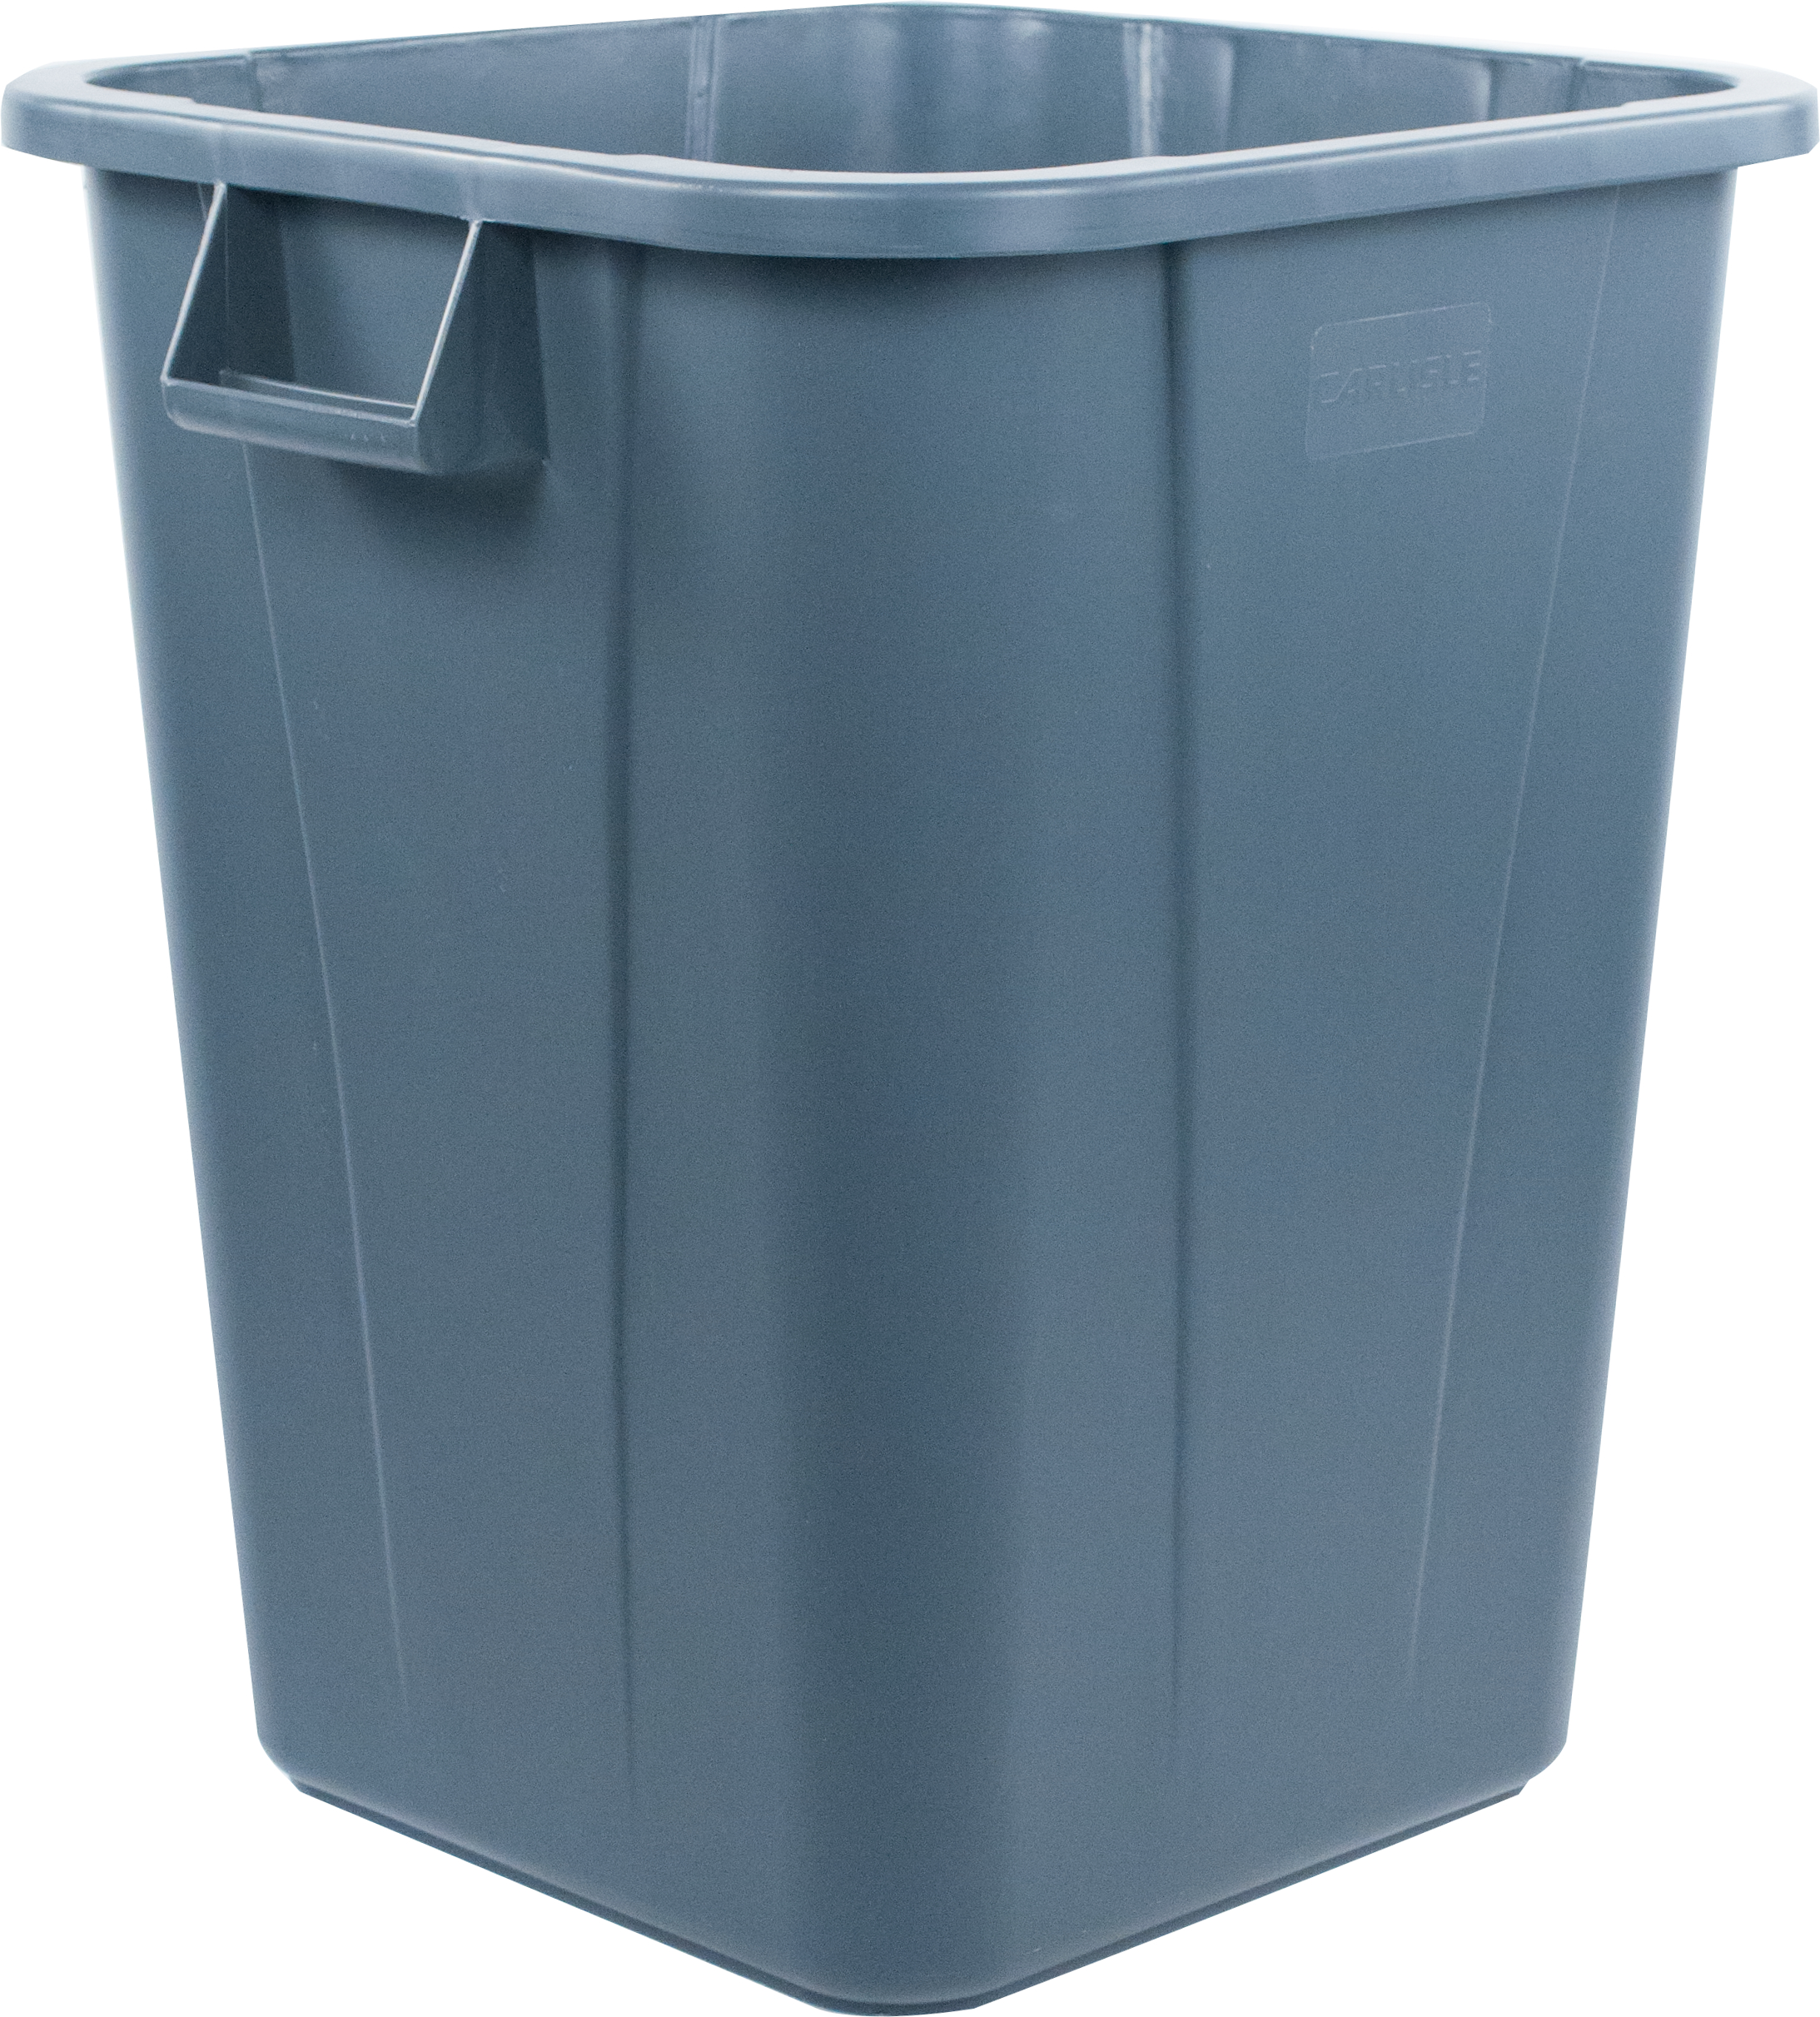 Bronco Square Waste Bin Trash Container 40 Gallon - Gray